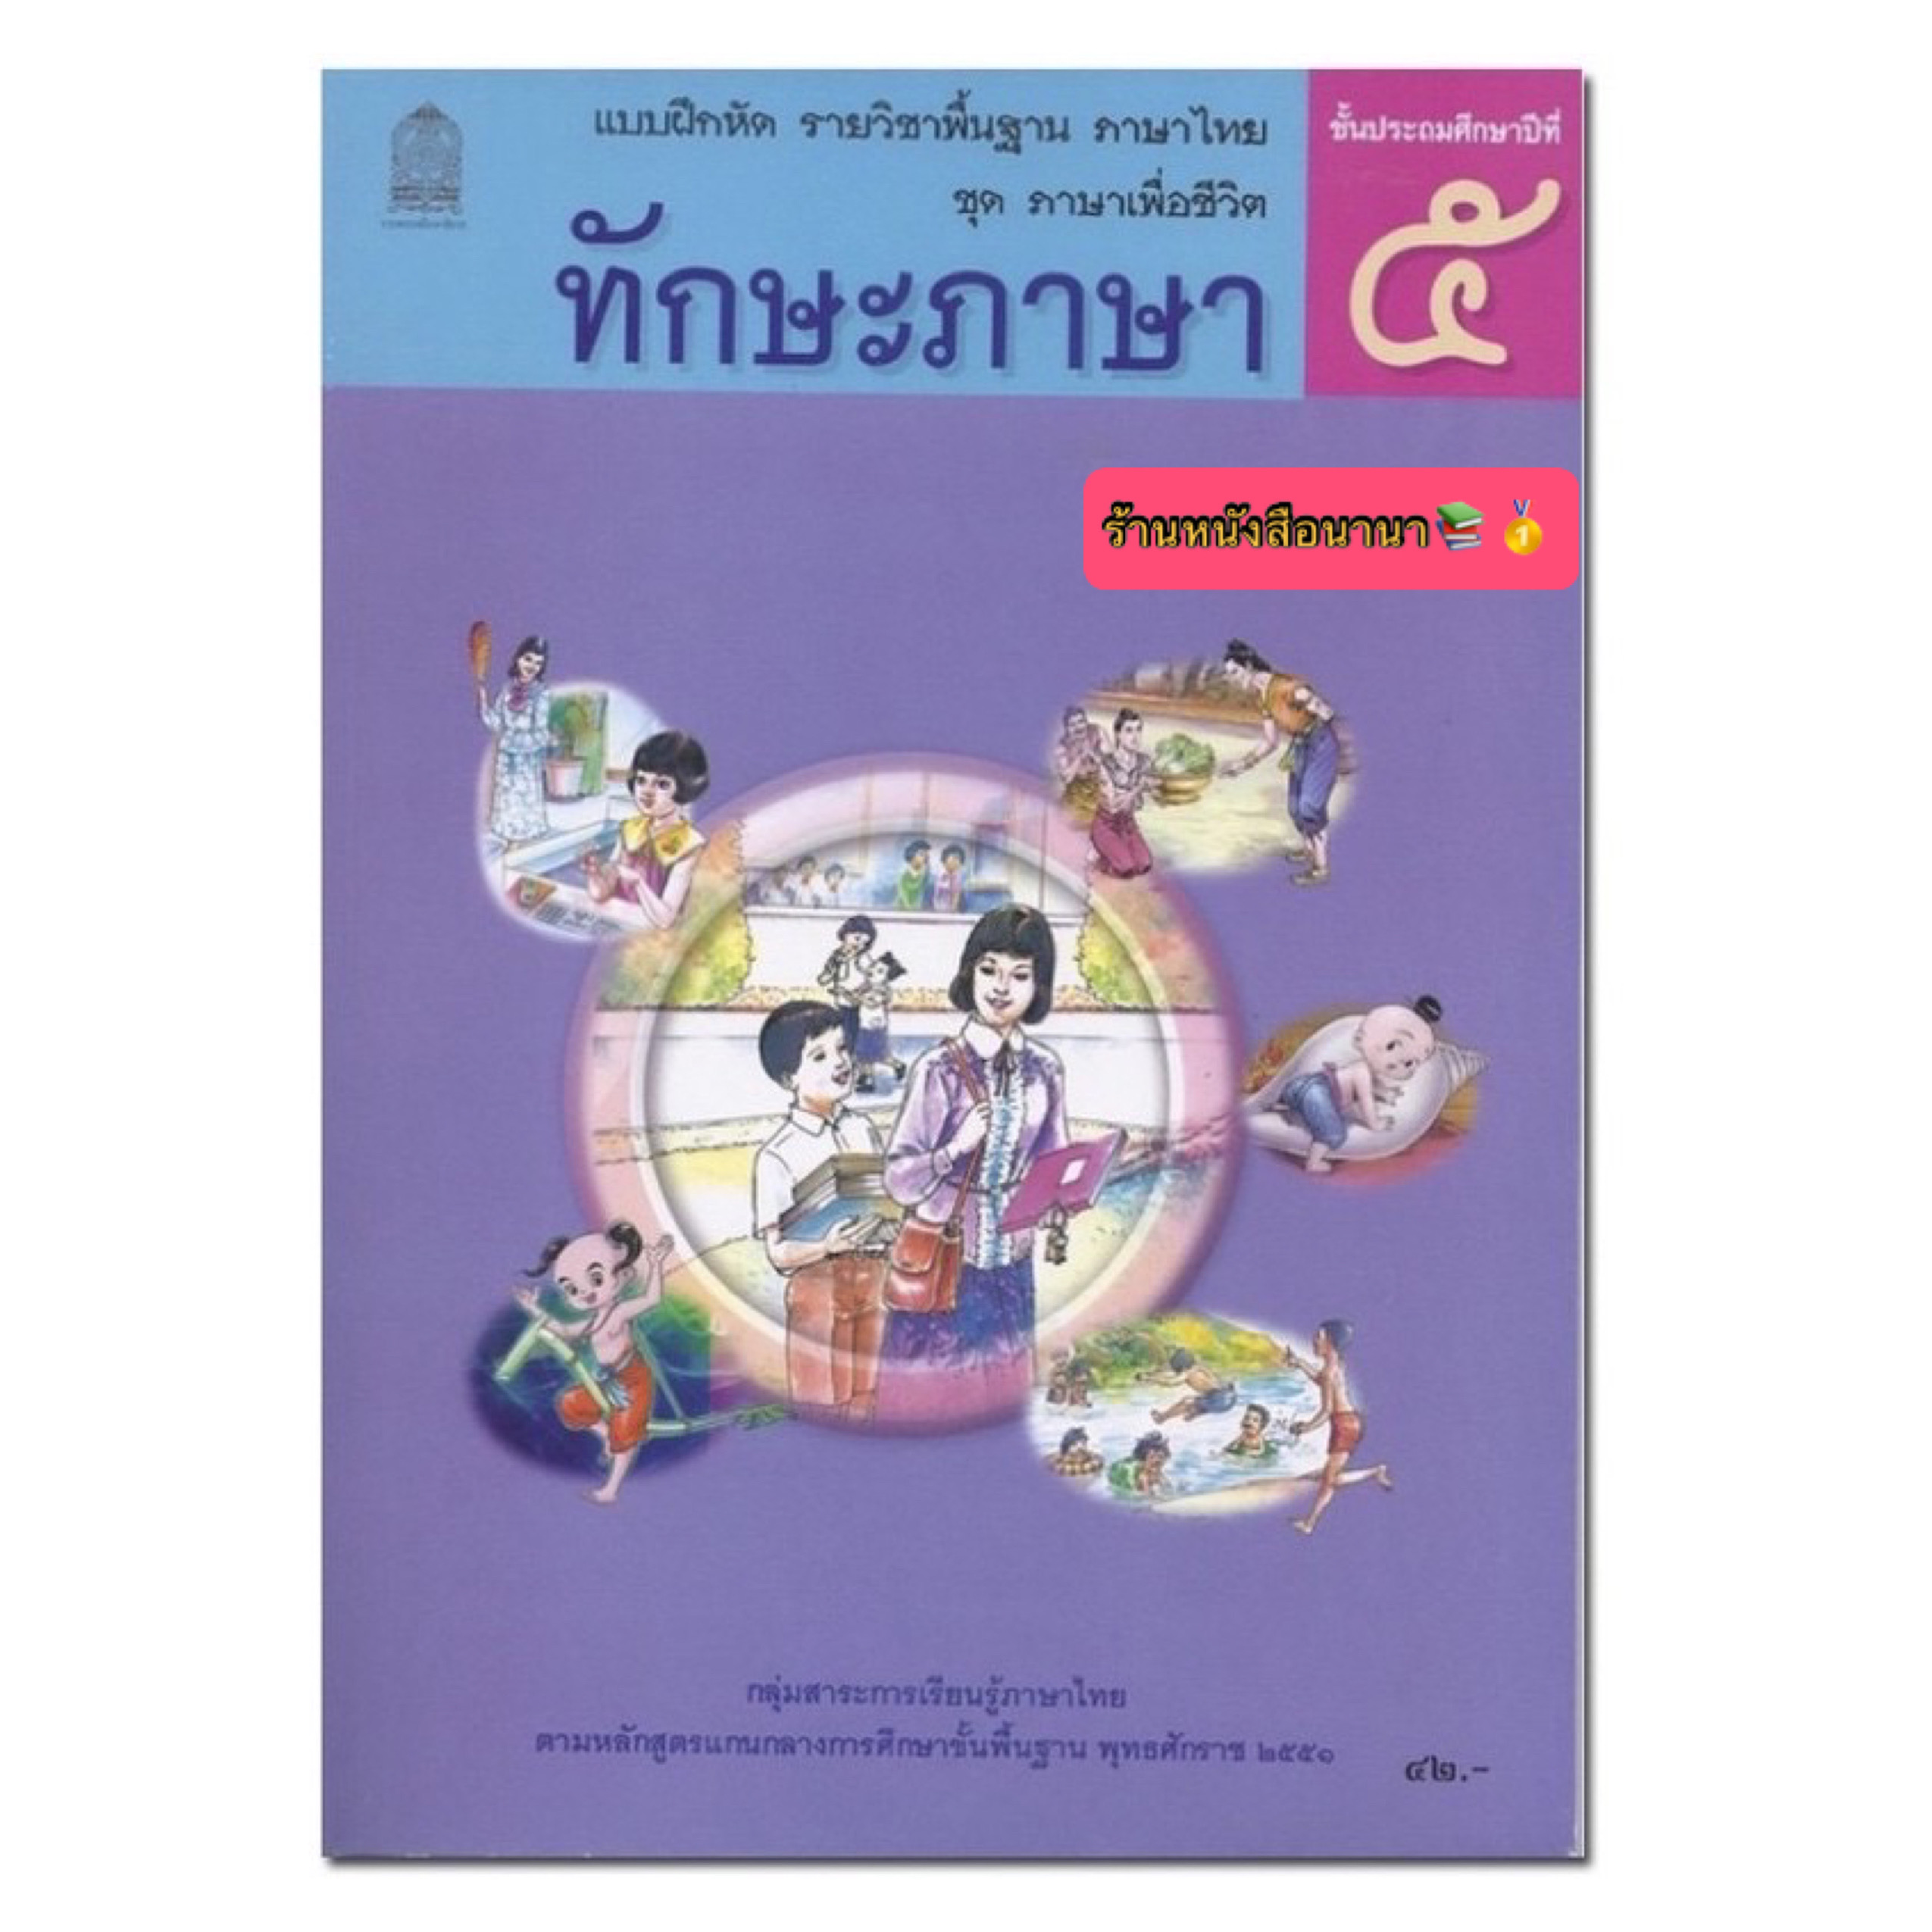 หนังสือเรียน แบบฝึกหัด ชุดภาษาเพื่อชีวิต ทักษะภาษา ป.5 กระทรวงฯ (สพฐ.) องค์การค้าของสกสค. หนังสือเรียนที่ใช้ในการเรียนปัจจุบัน